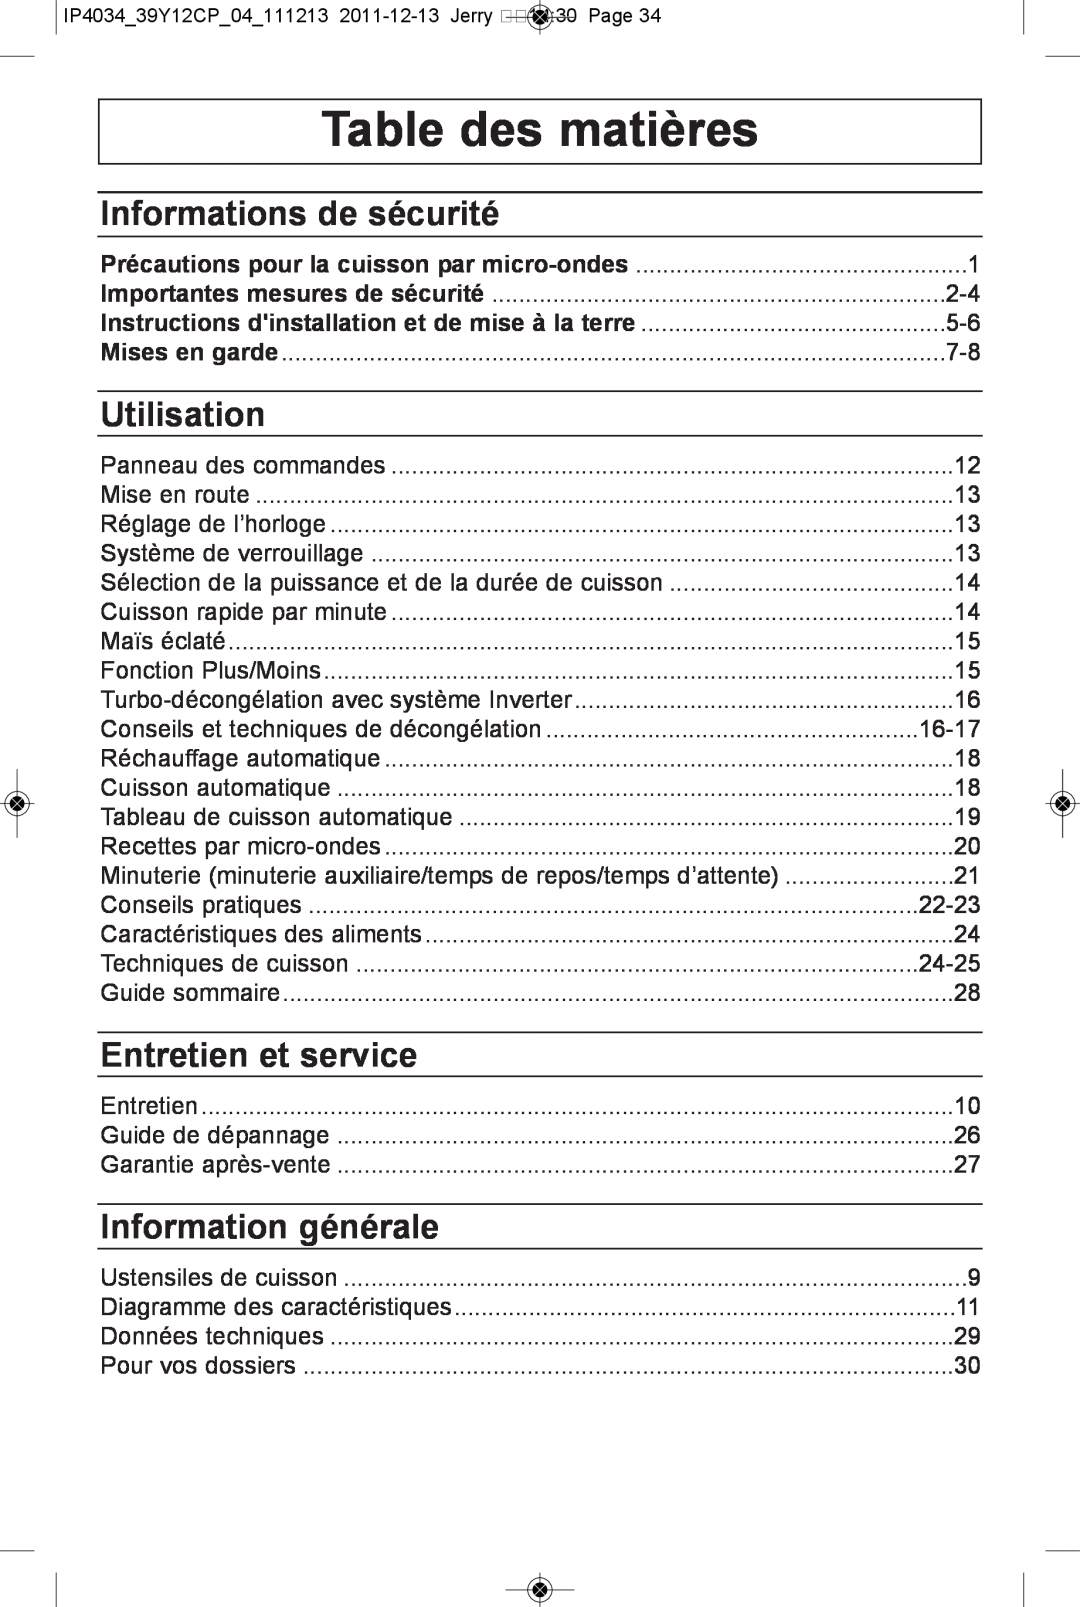 Panasonic NN-ST661S Table des matières, Informations de sécurité, Utilisation, Entretien et service, Information générale 